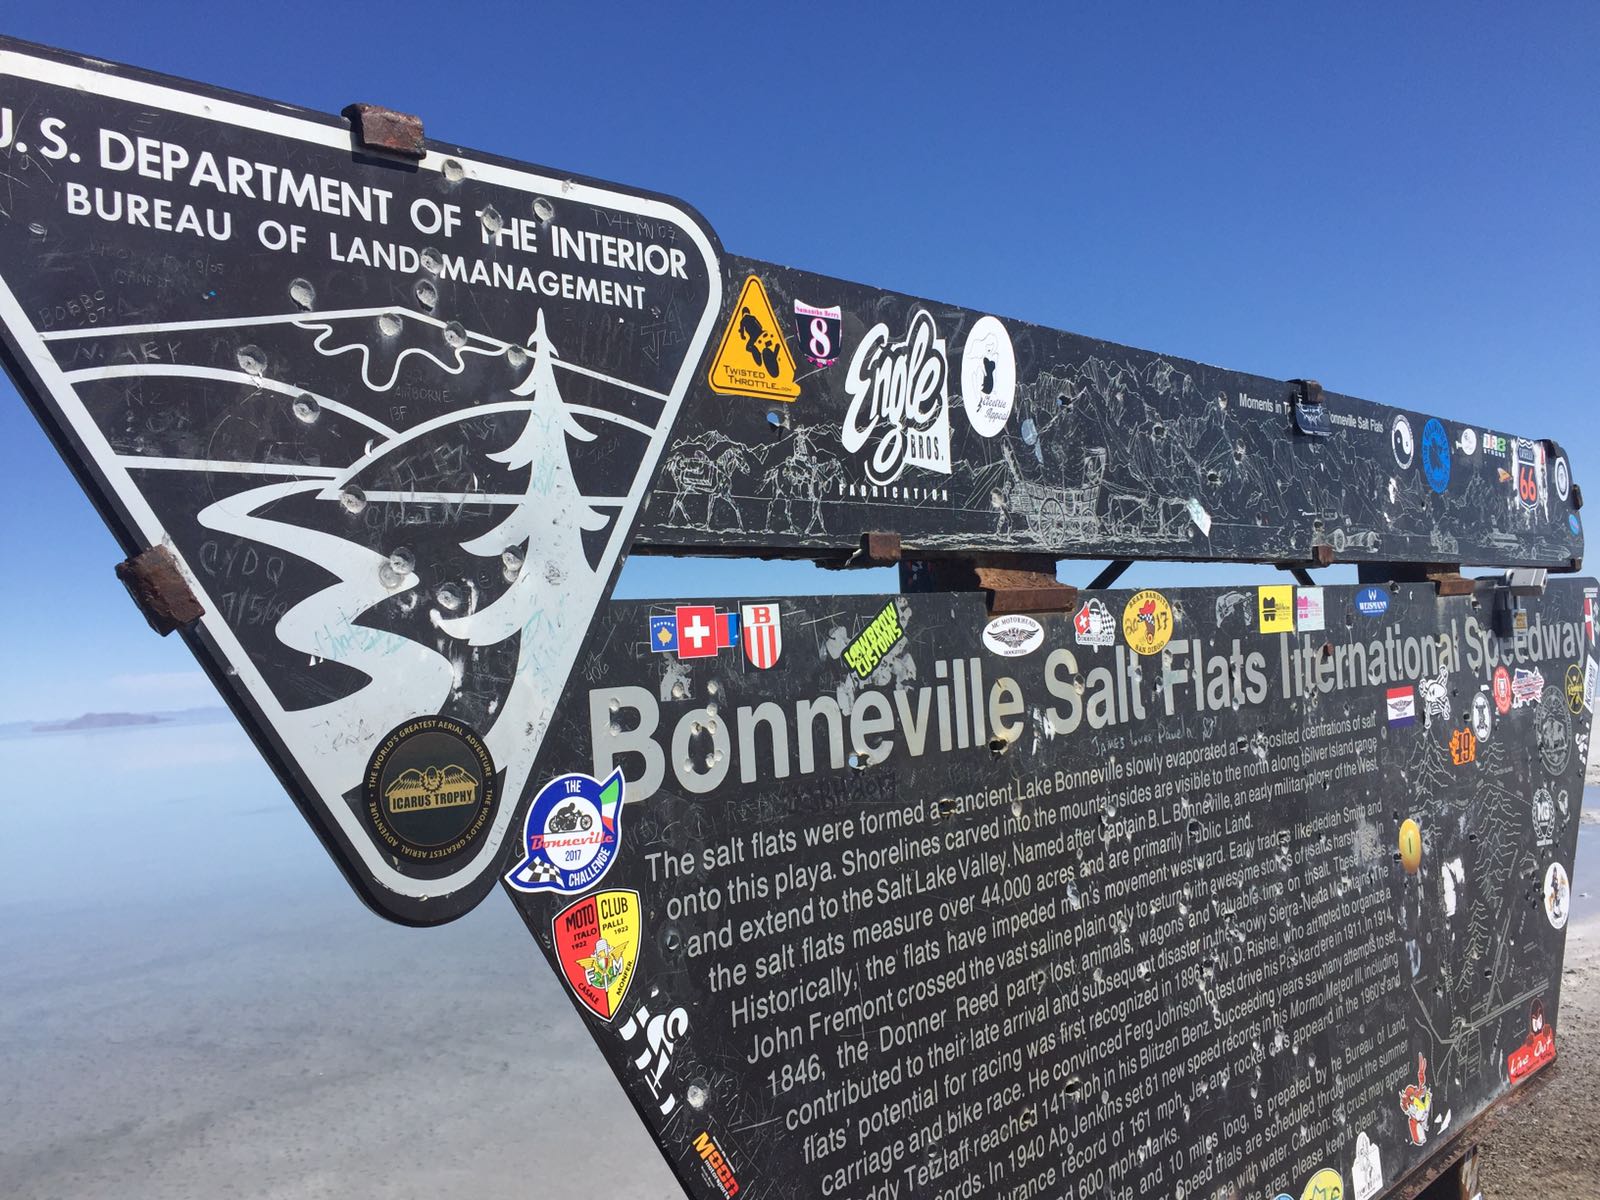 The Bonneville Salt Flats get tagged